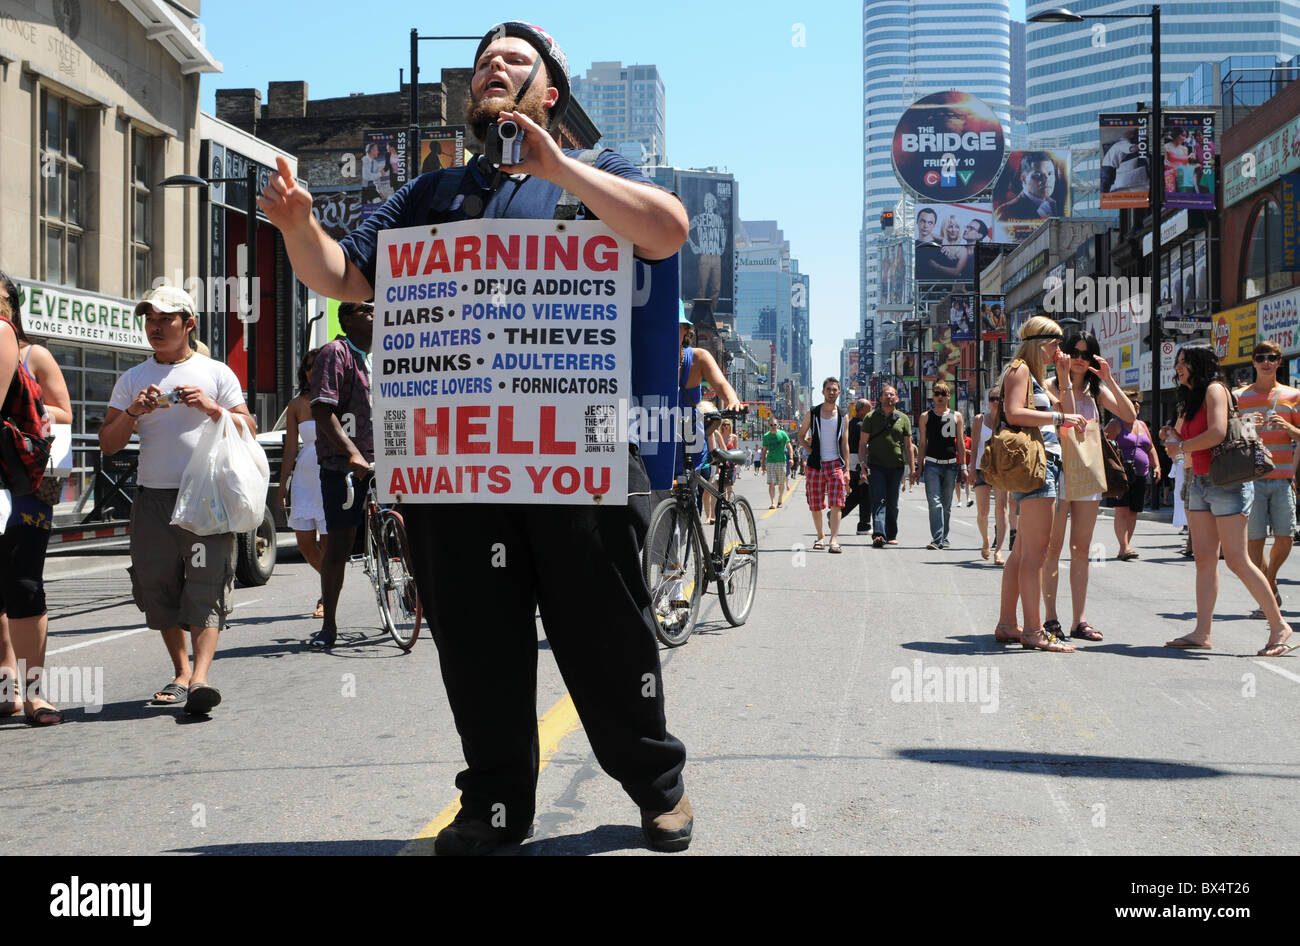 Eine Darstellung der religiösen Grundlage Intoleranz und Verurteilung während einer ansonsten glückseligen Toronto Pride Parade Day Celebration. Stockfoto